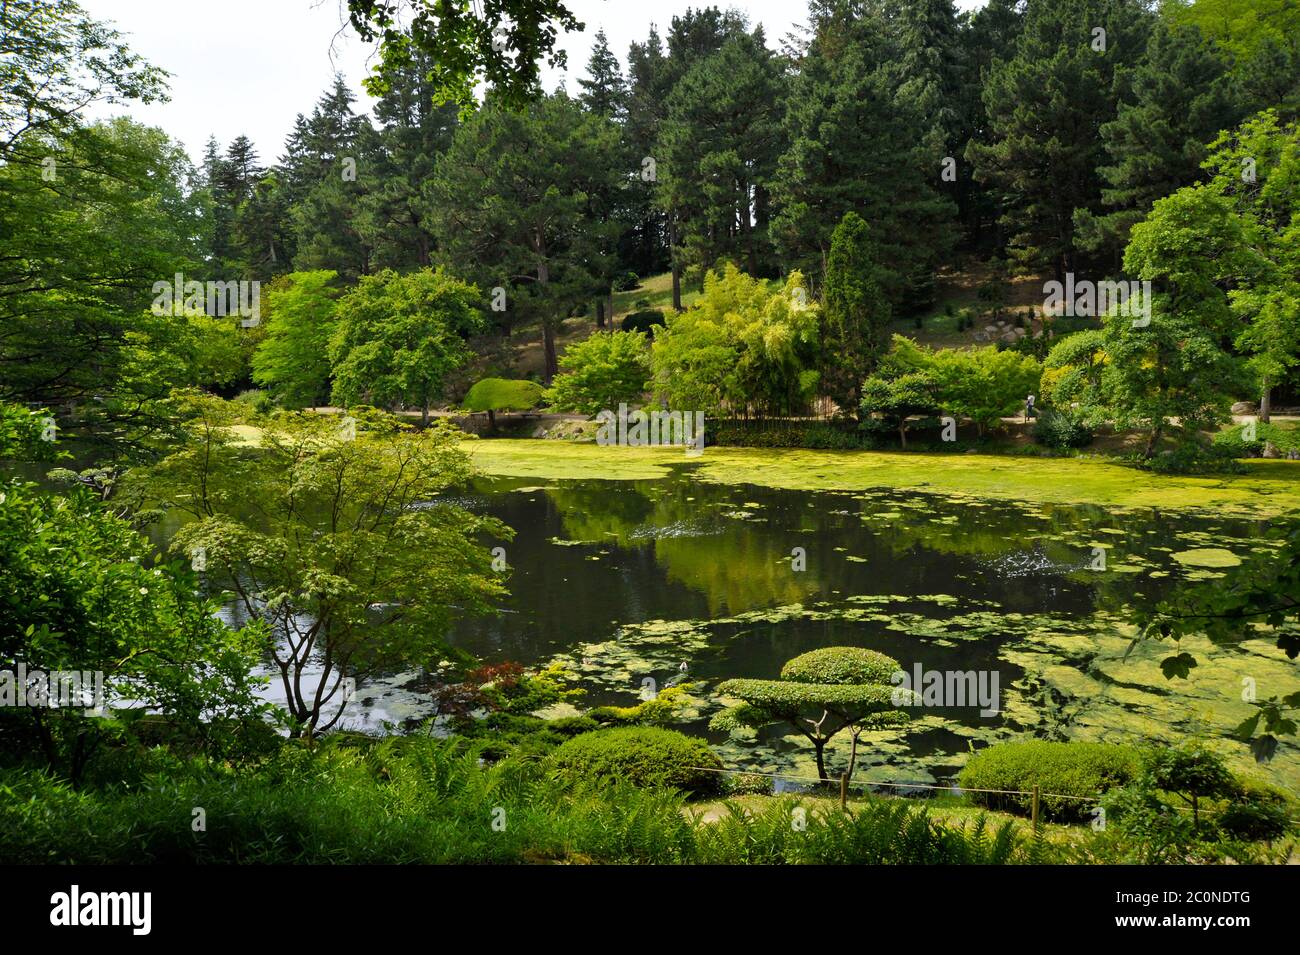 Japanese gardens Maulevrier France. Stock Photo